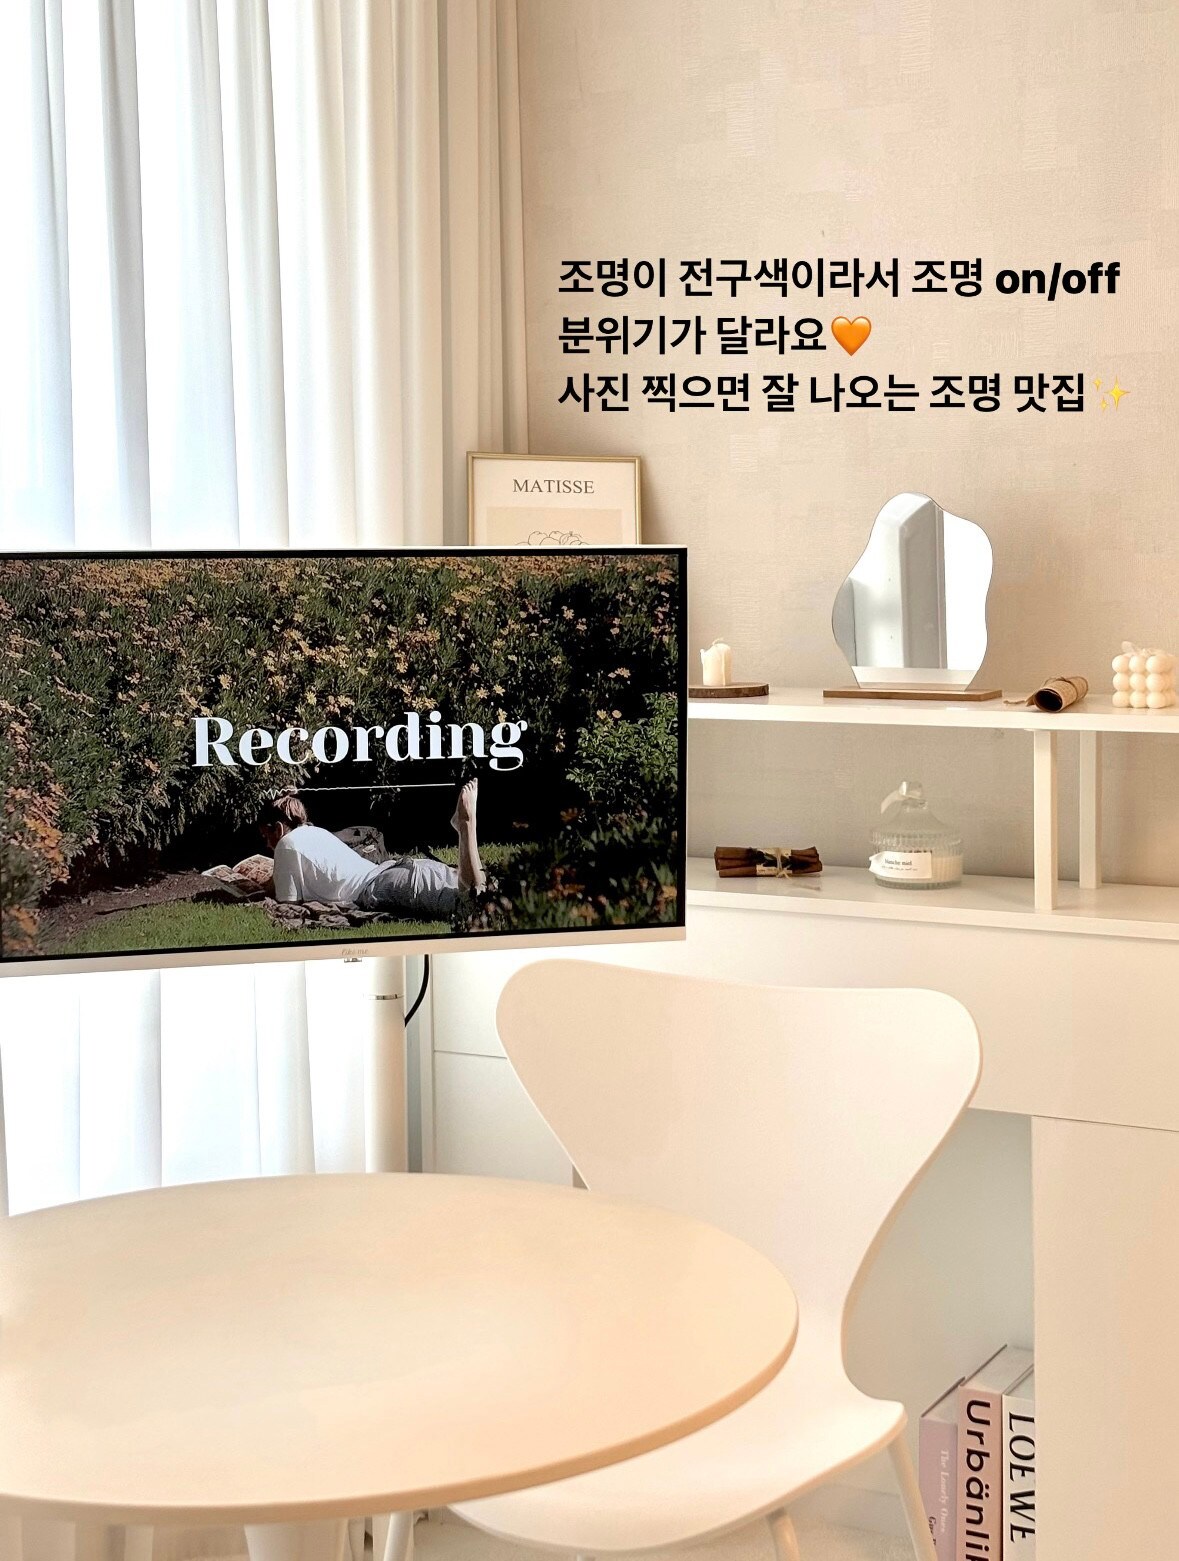 [免费停车位] Instagram Gamseong Accommodation✨ ☕️ Cafe Sensational Photo Zone📸  Yongbong-dong Orhouse🤎🤎🤍